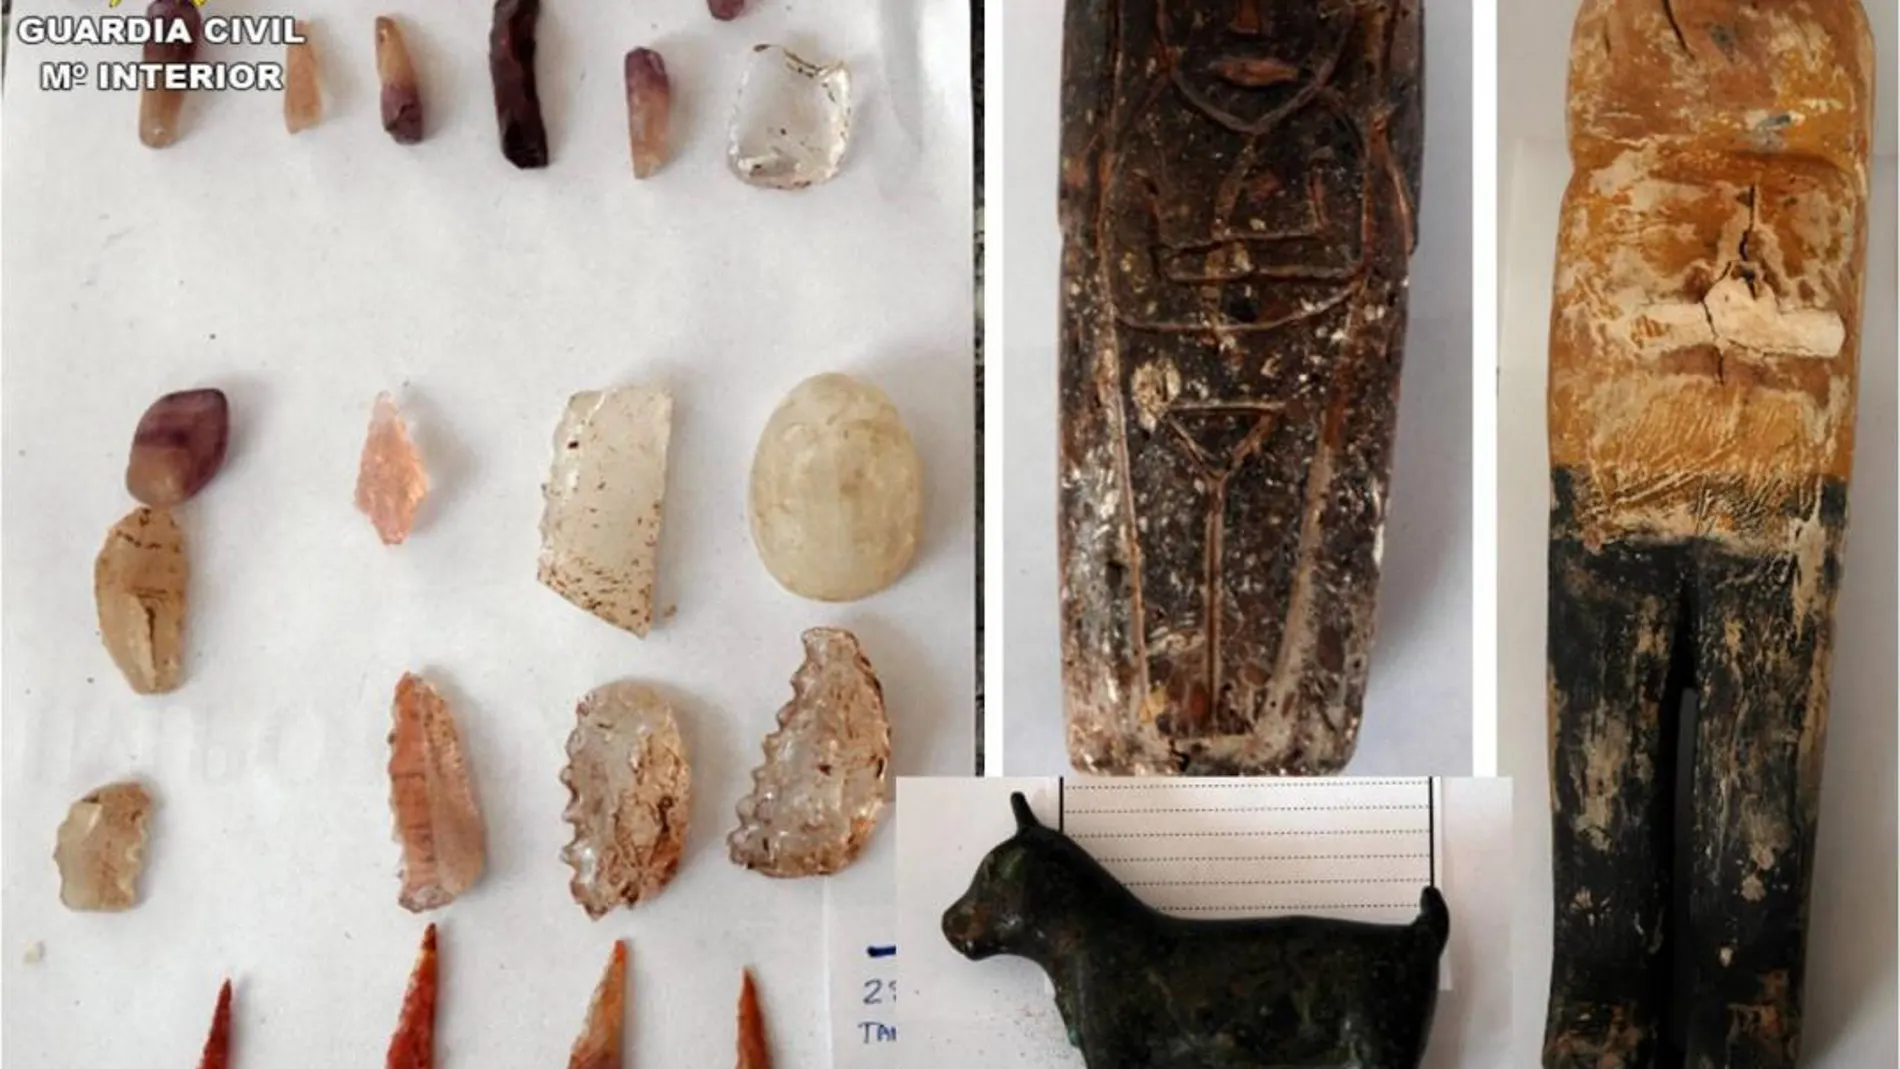 La Guardia Civil ha recuperado las piezas procedentes de diferentes yacimientos arqueológicos de Murcia, Alicante, Granada y Albacete